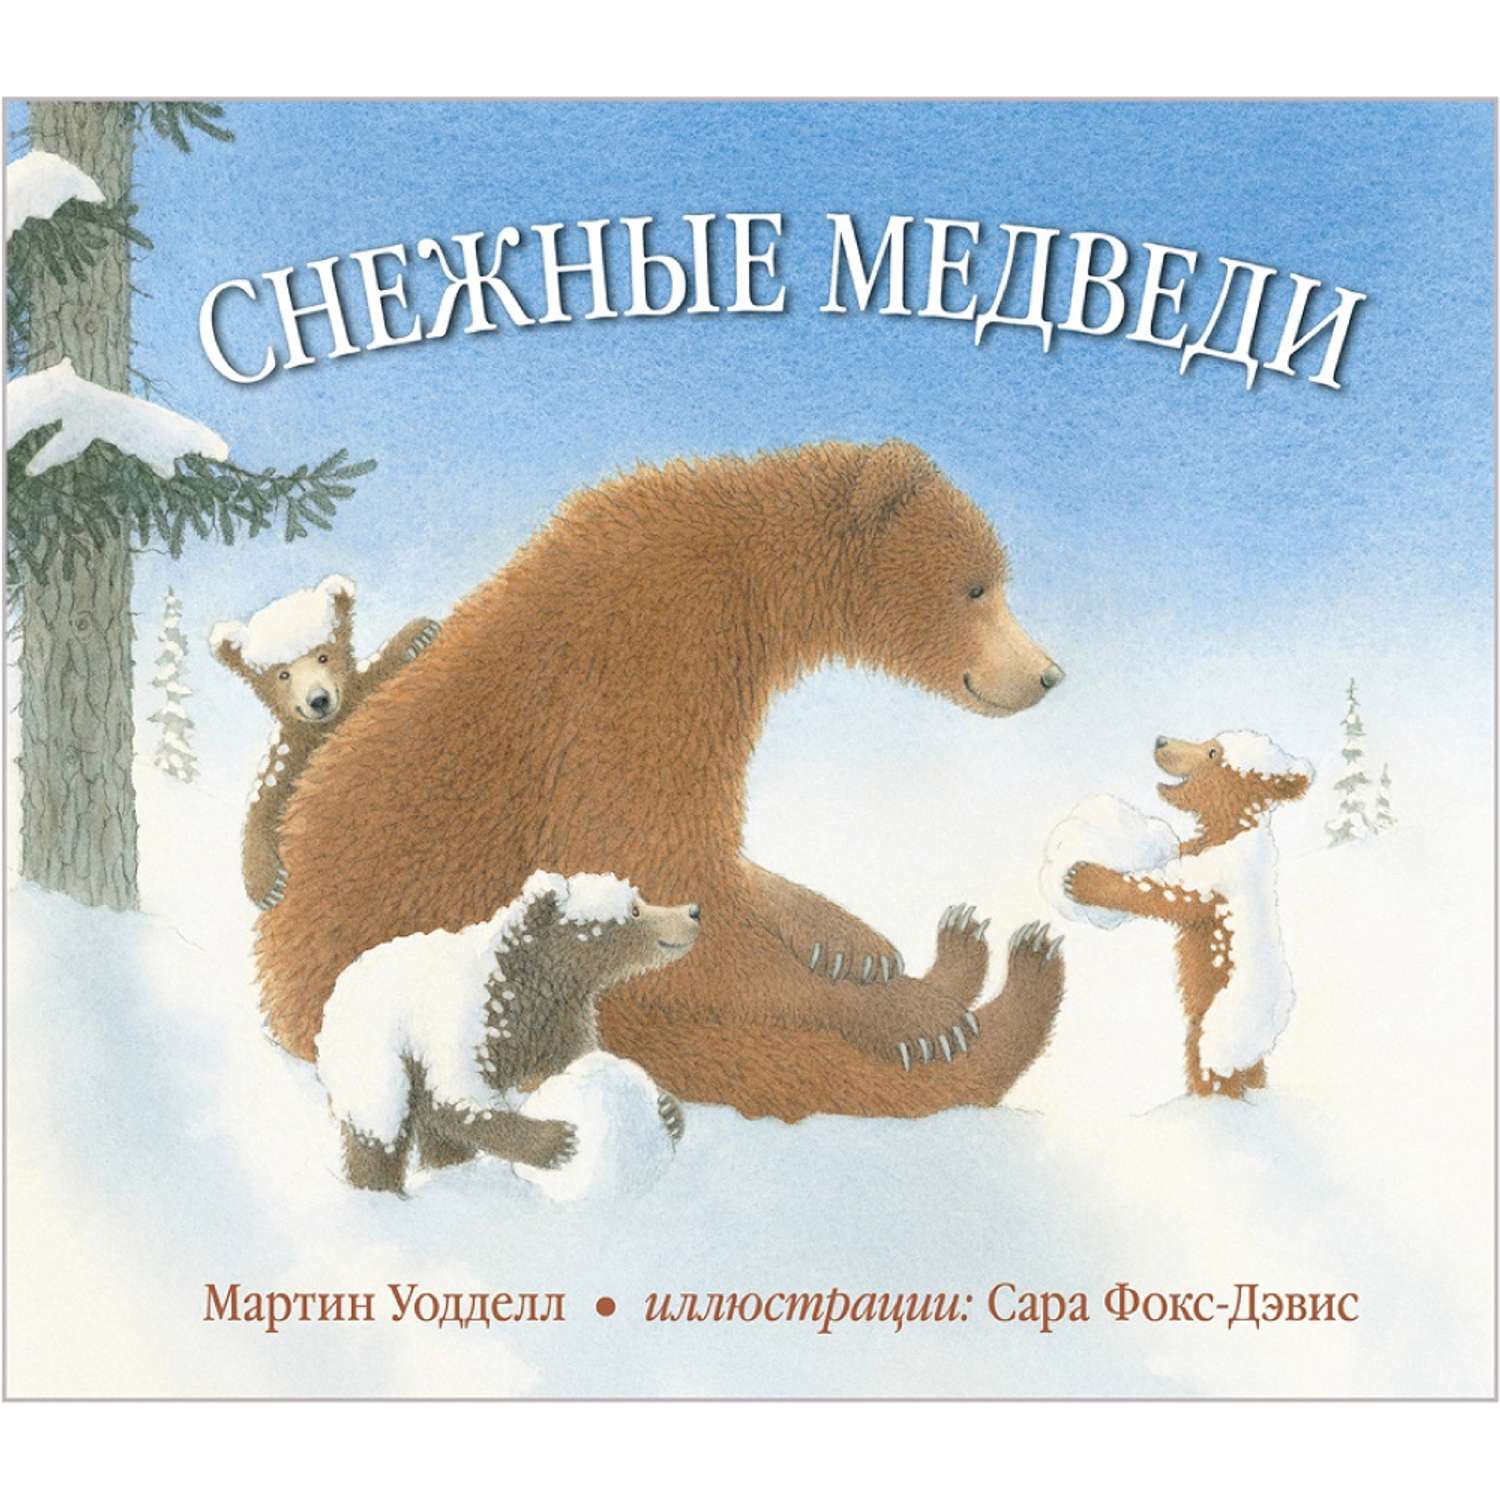 Медведь снежок. Снежный мишка книжка. Снежный Медвежонок книга. Уодделл м. "снежные медведи". Иллюстрации белого медведя из книг.